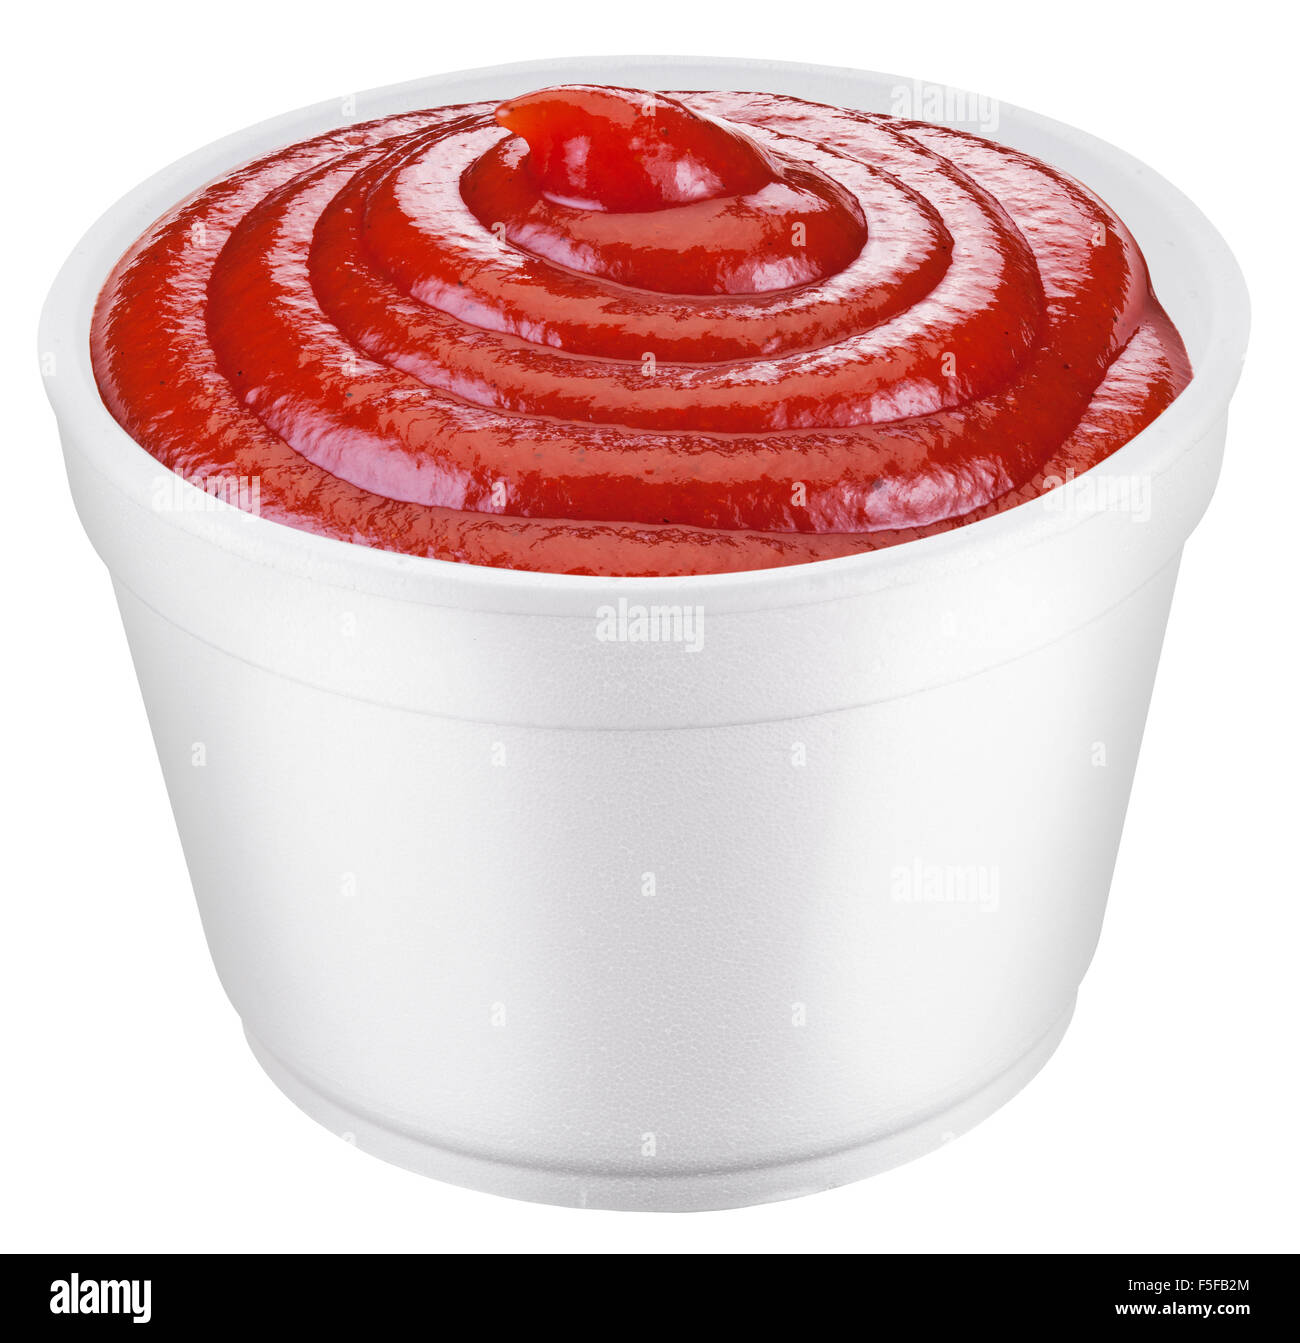 La salsa de tomate ketchup en la cubeta de plástico blanco. Archivo contiene trazados de recorte. Foto de stock